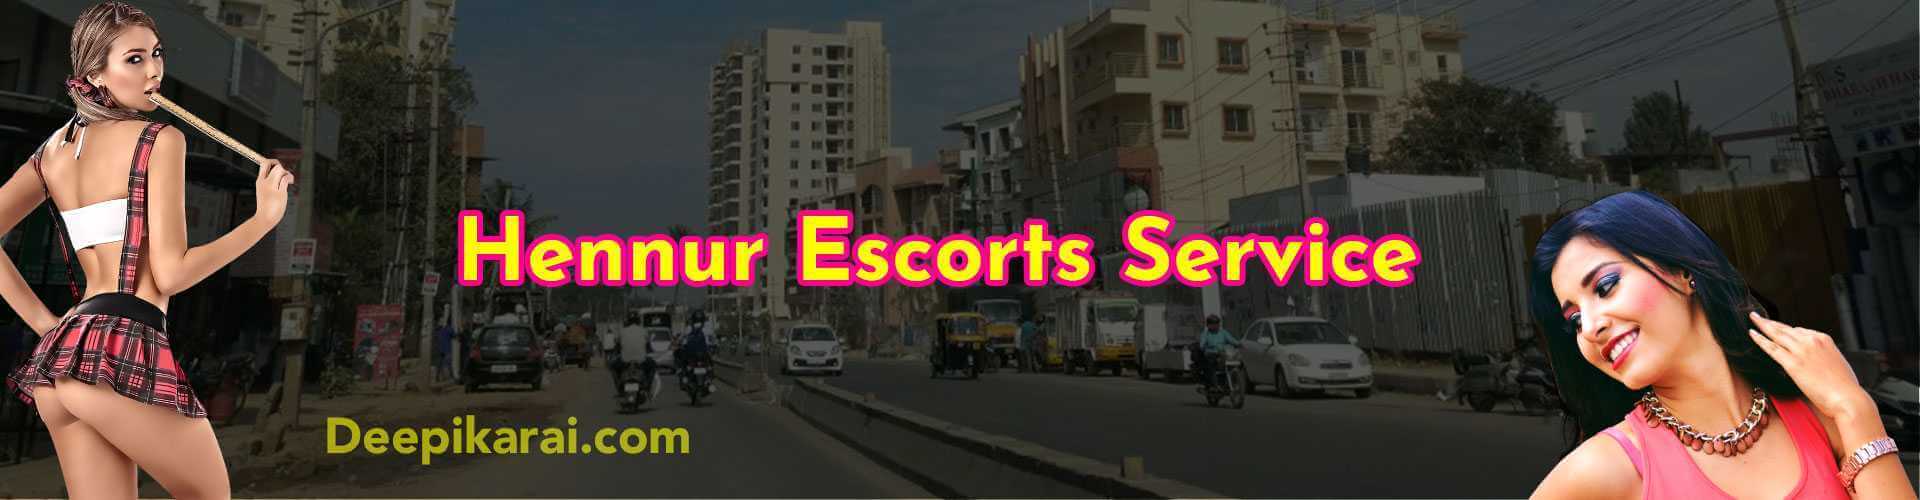 hennur escorts services